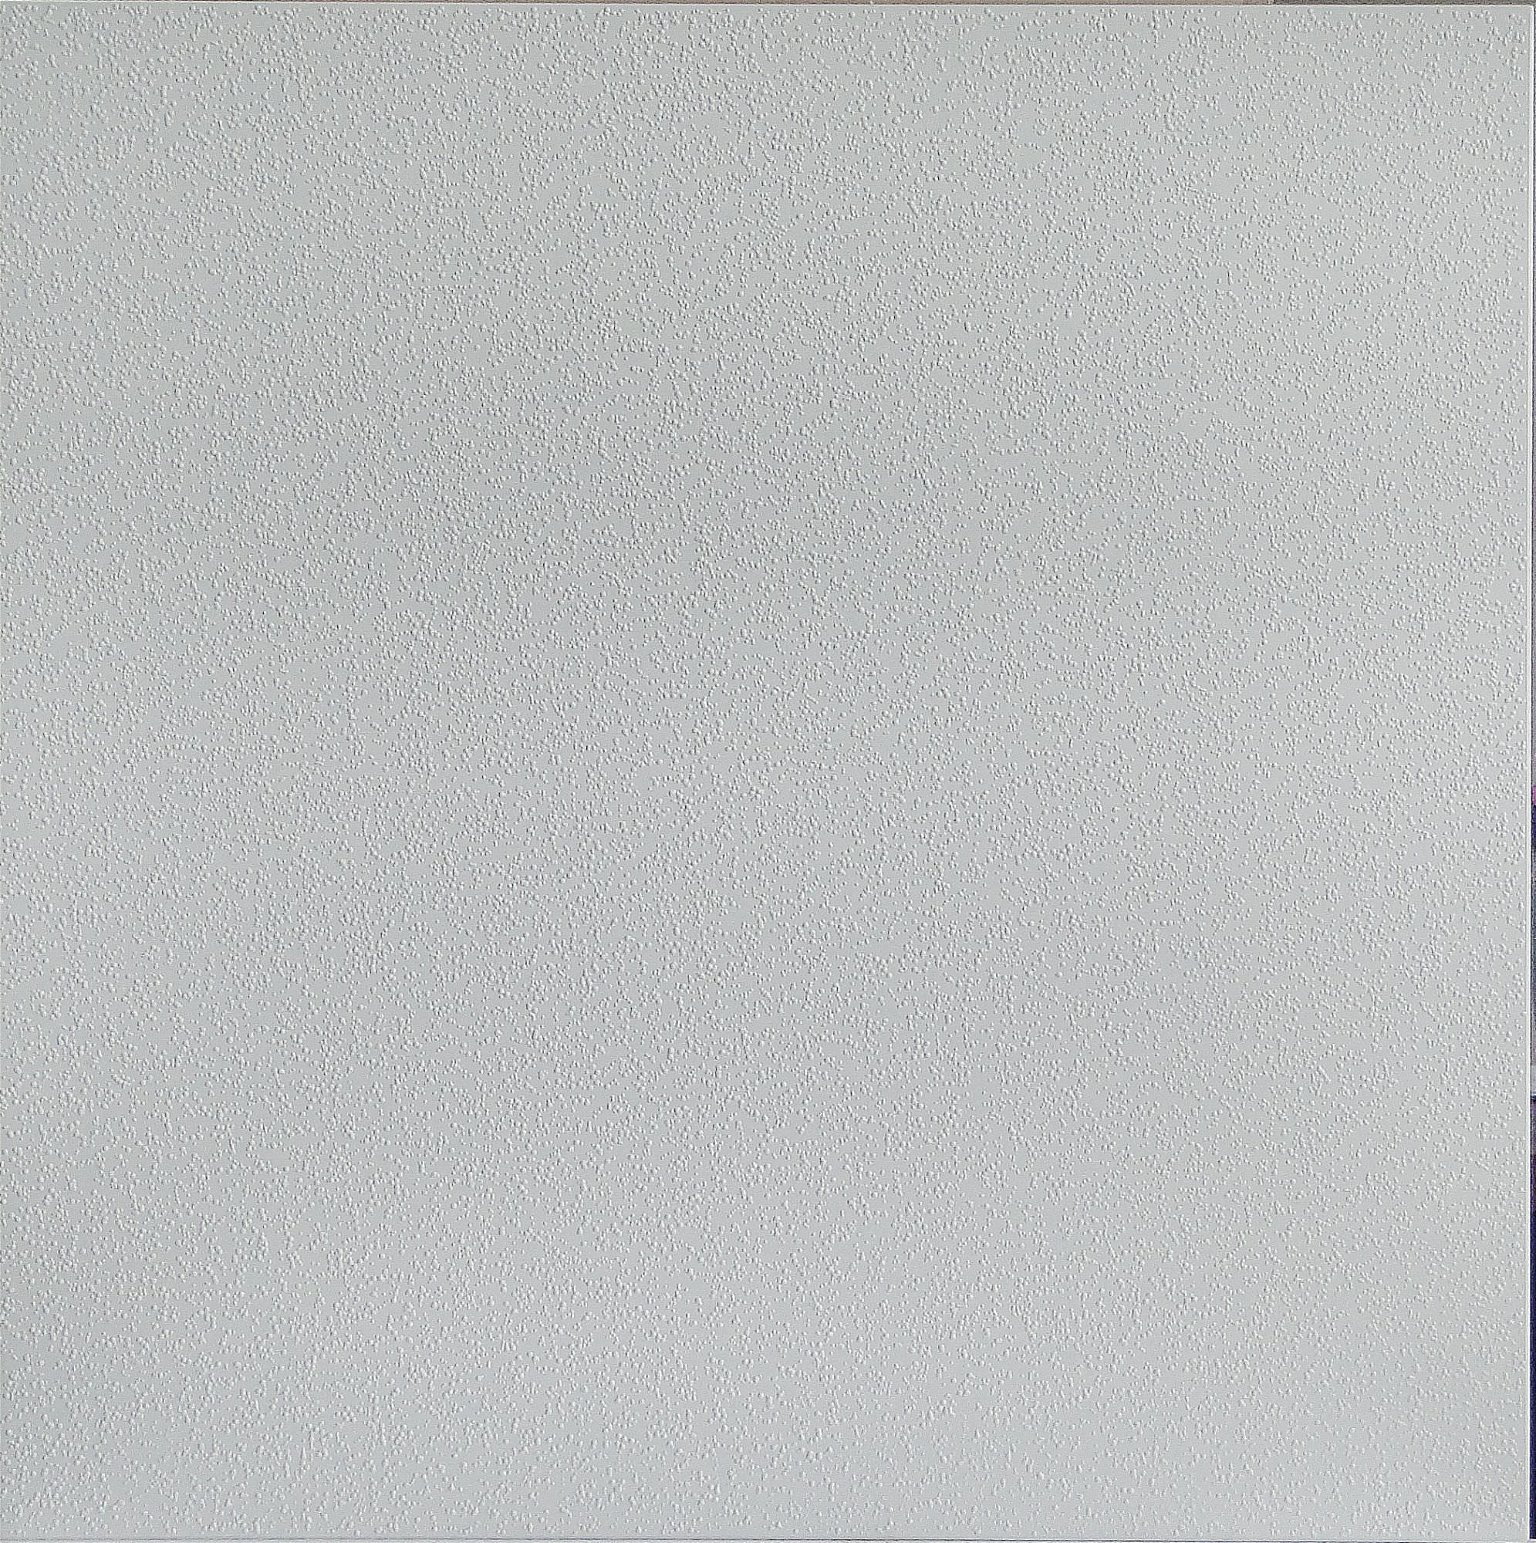 Klijuojamos lubų plokštės ROSA, plaunamos, baltos sp., 50 x 50 cm